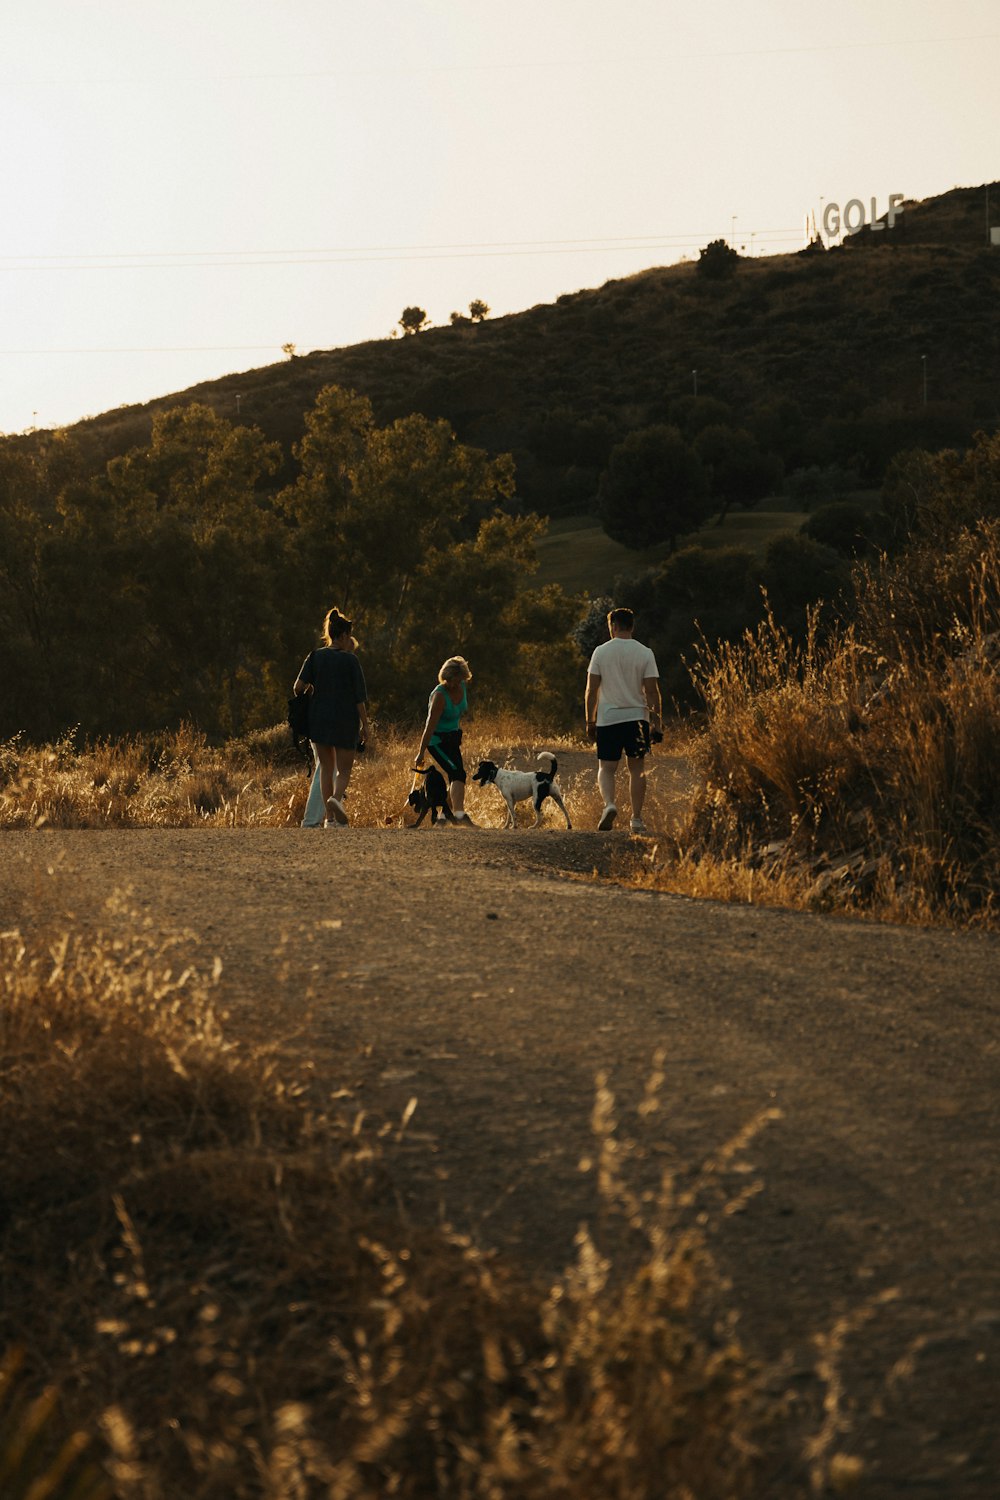 Un grupo de personas paseando perros por un camino de tierra